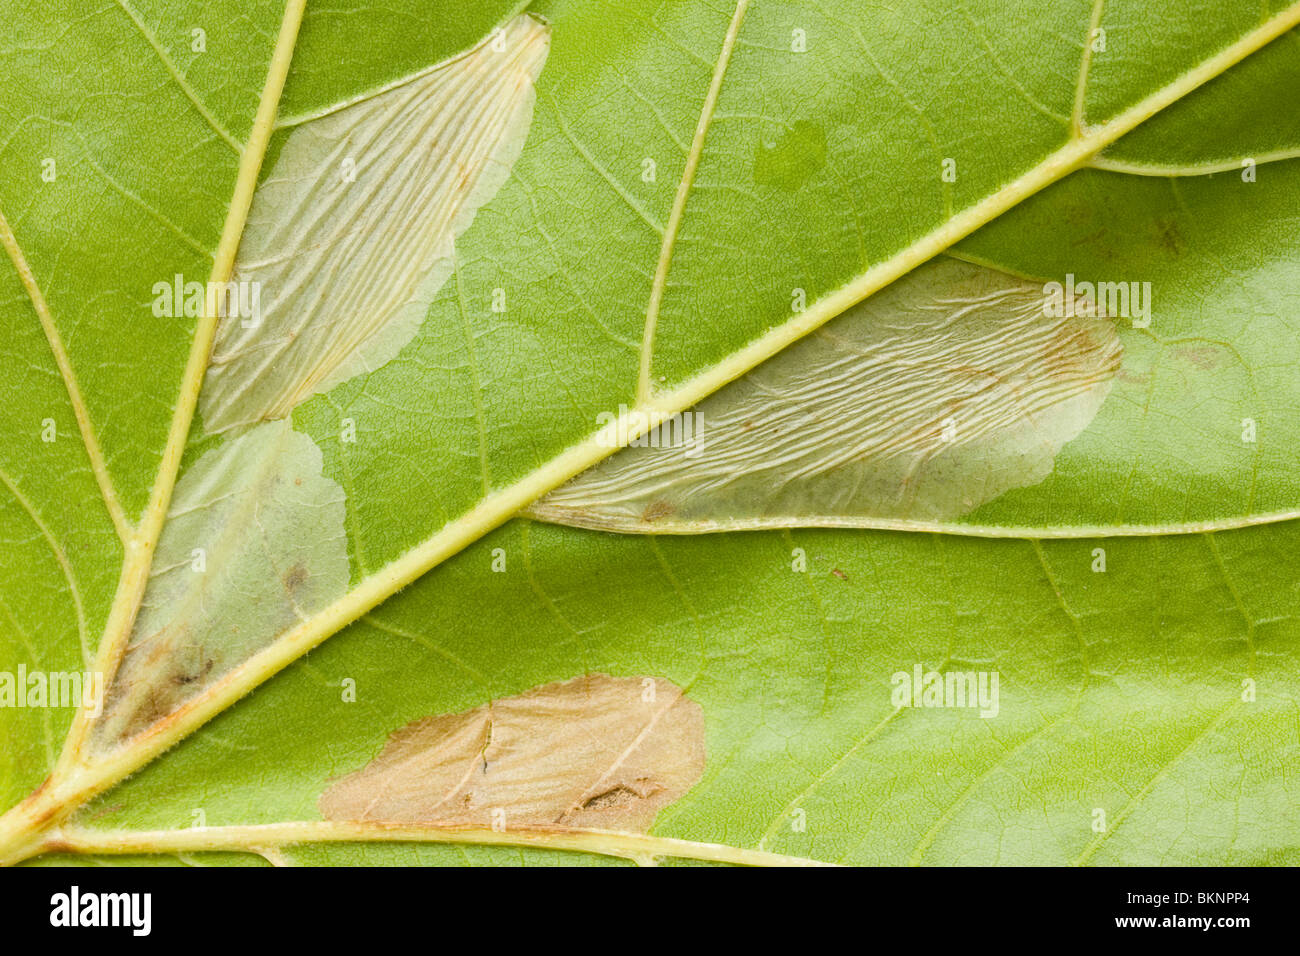 Verschillende vouwmijnen van het Plataanvouwmijnmotje in een blad van een Plataan. Several leaf mines of Phyllonorycter platani in a single leaf of a London Plane (platanus x acerifolia). Stock Photo